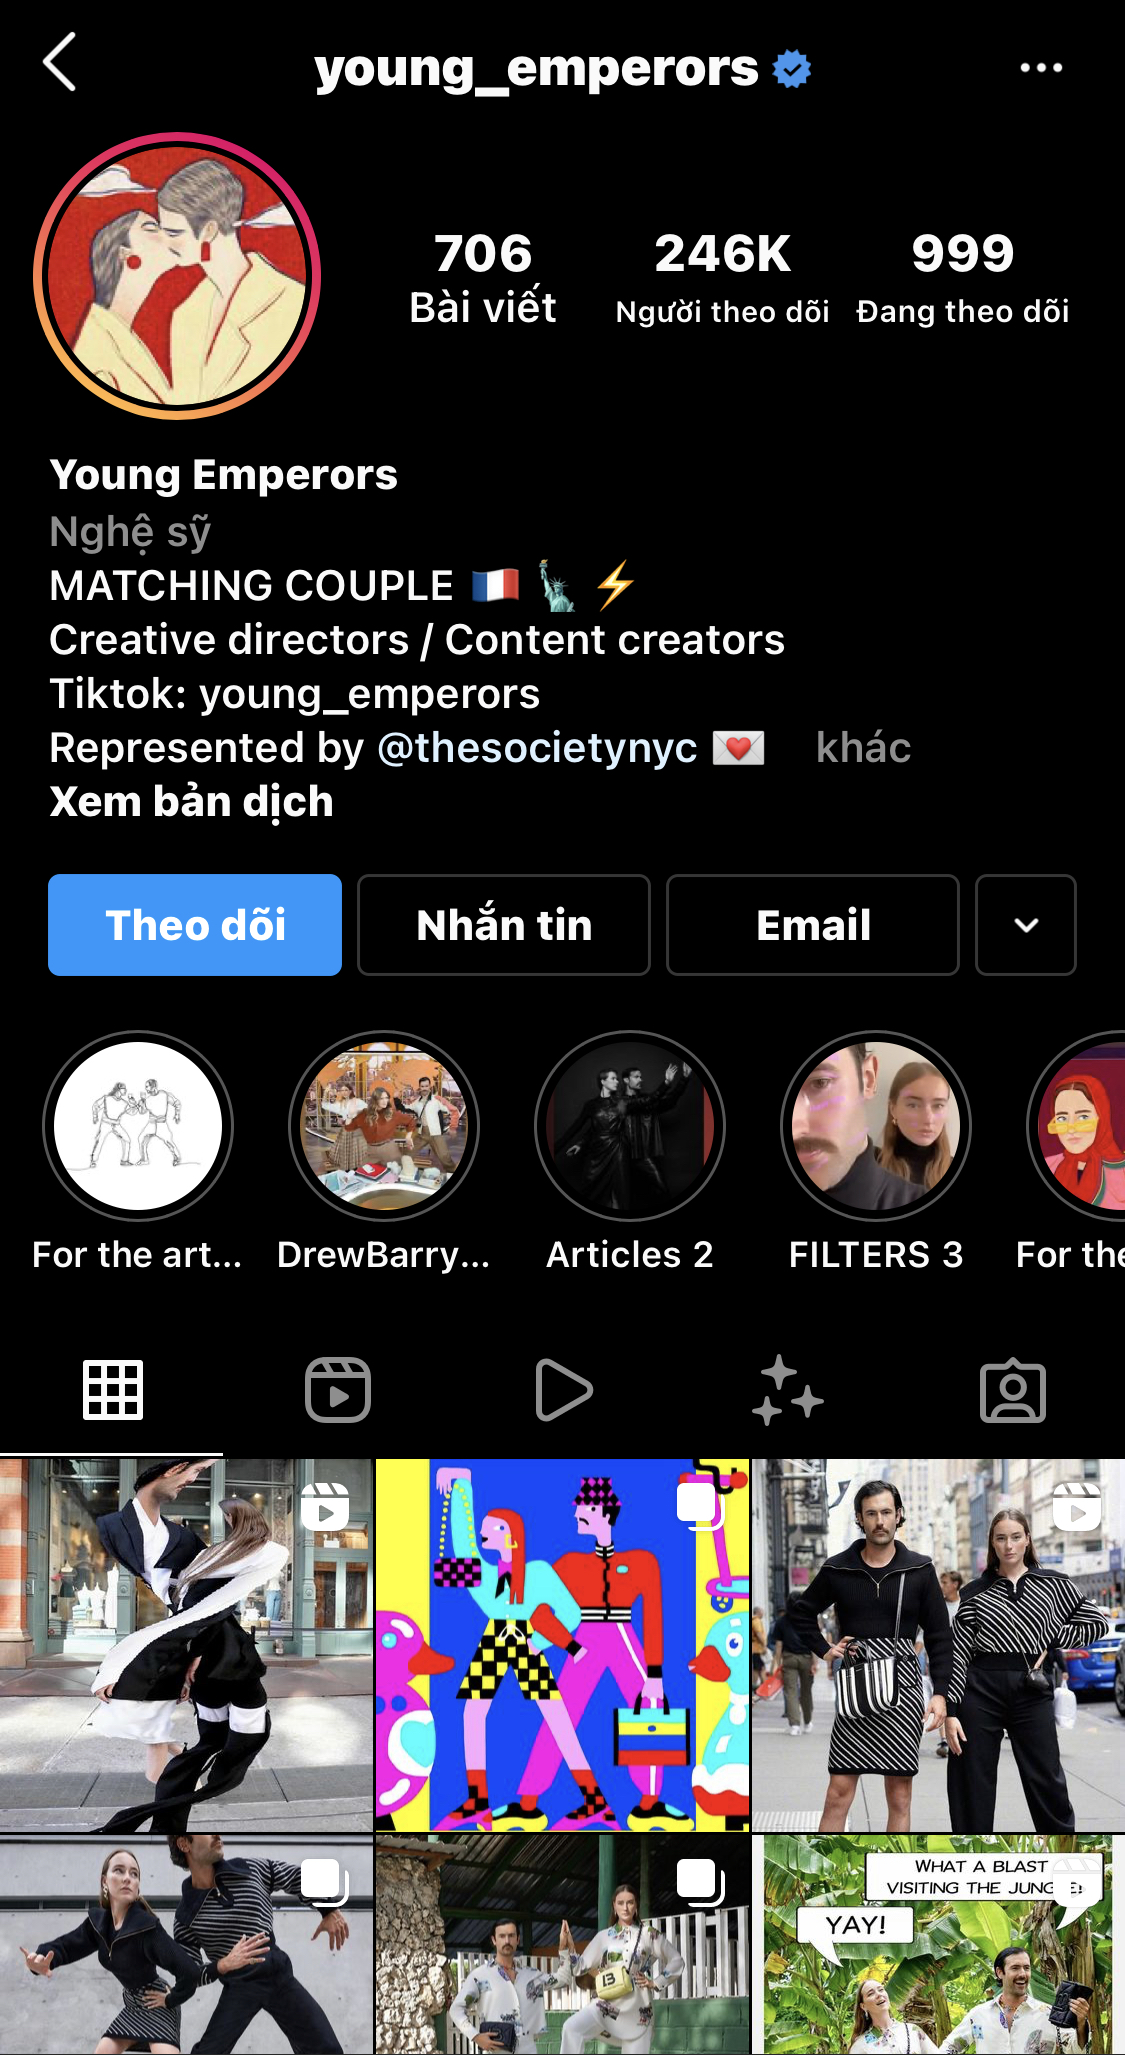 Tài khoản Instagram young_emperors thành lập từ năm 2018, thu hút hơn 245 nghìn lượt theo dõi, là nơi họ cập nhật những outfit đồ đôi sành điệu và lạ mắt.